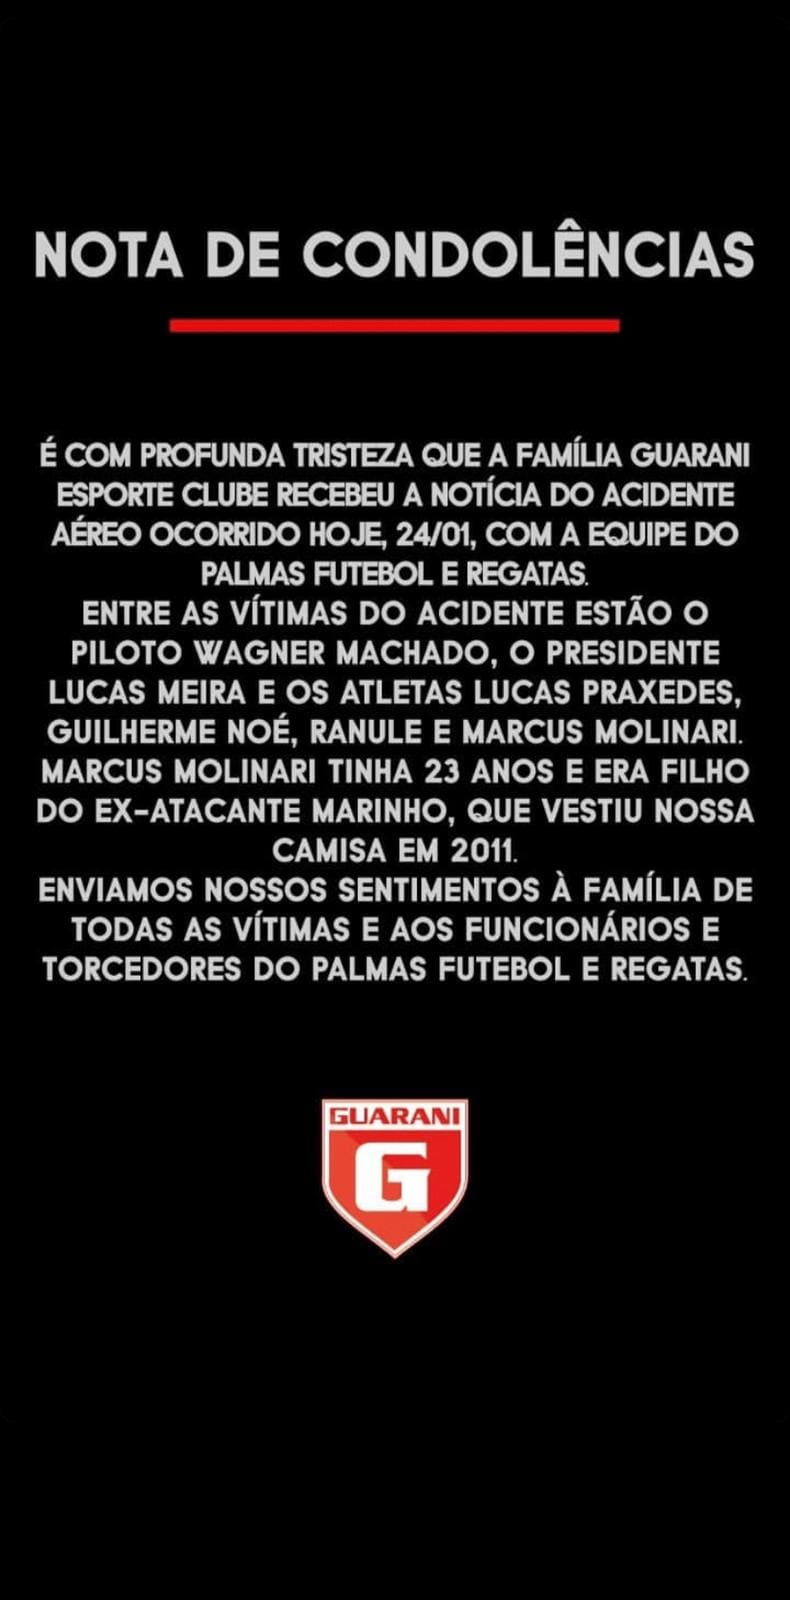 Guarani posta nota de condolências pela a morte do filho do ex-atacante Marinho que vestiu a camisa do Guarani em 2011